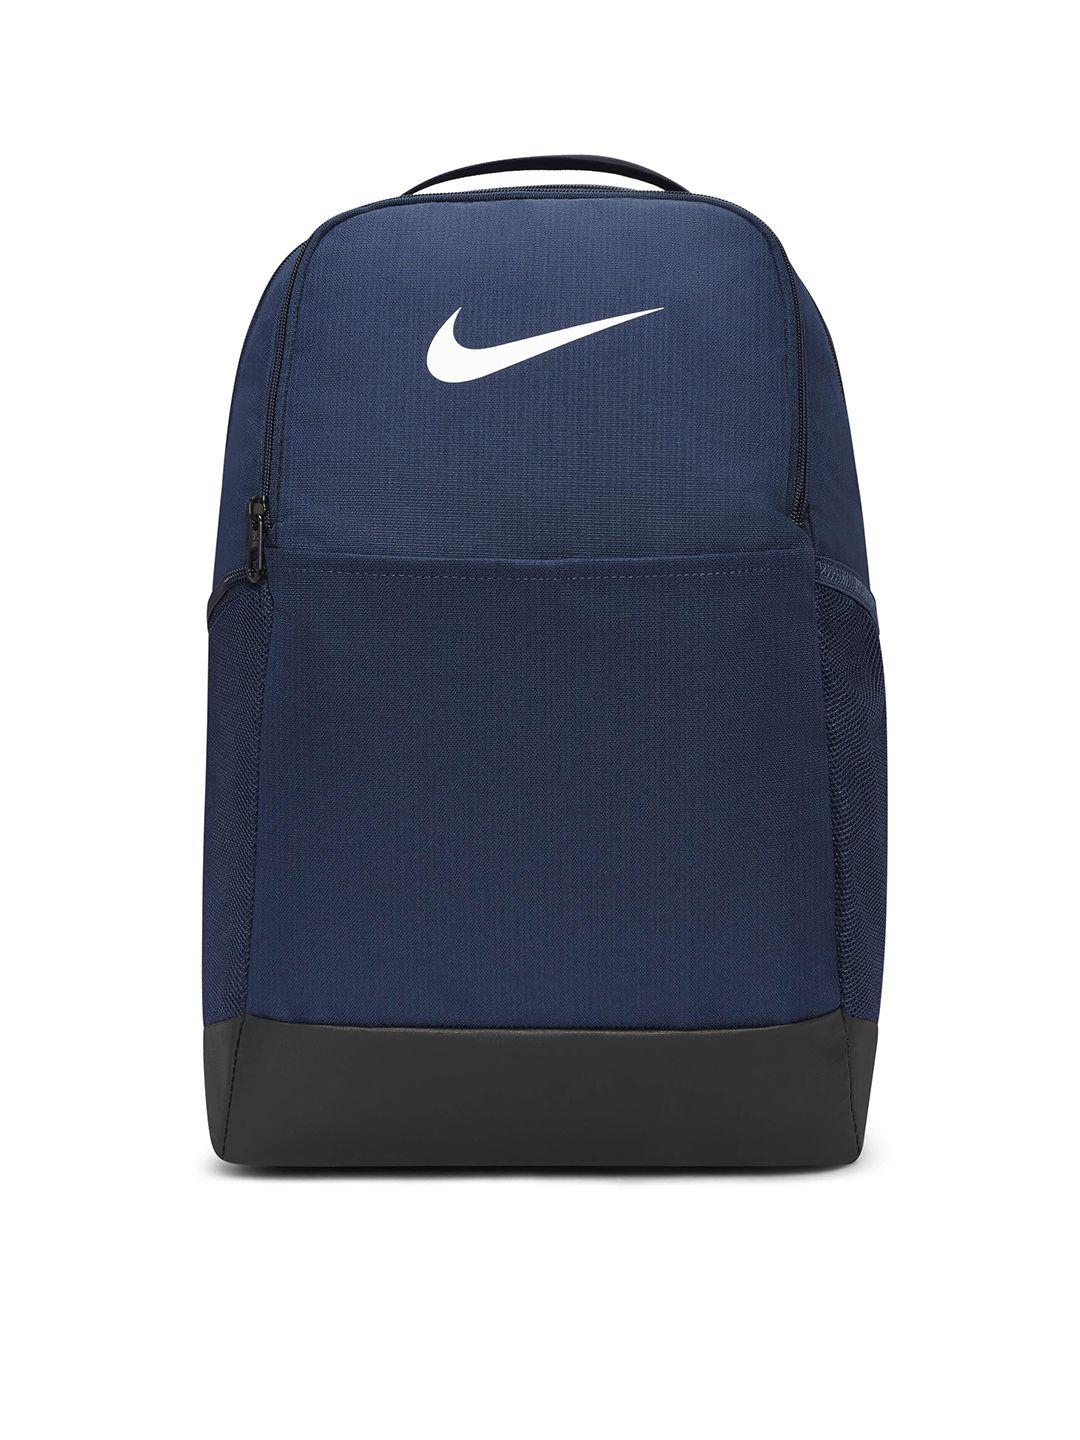 nike-brand-logo-printed-rasilia-9.5-training-backpack